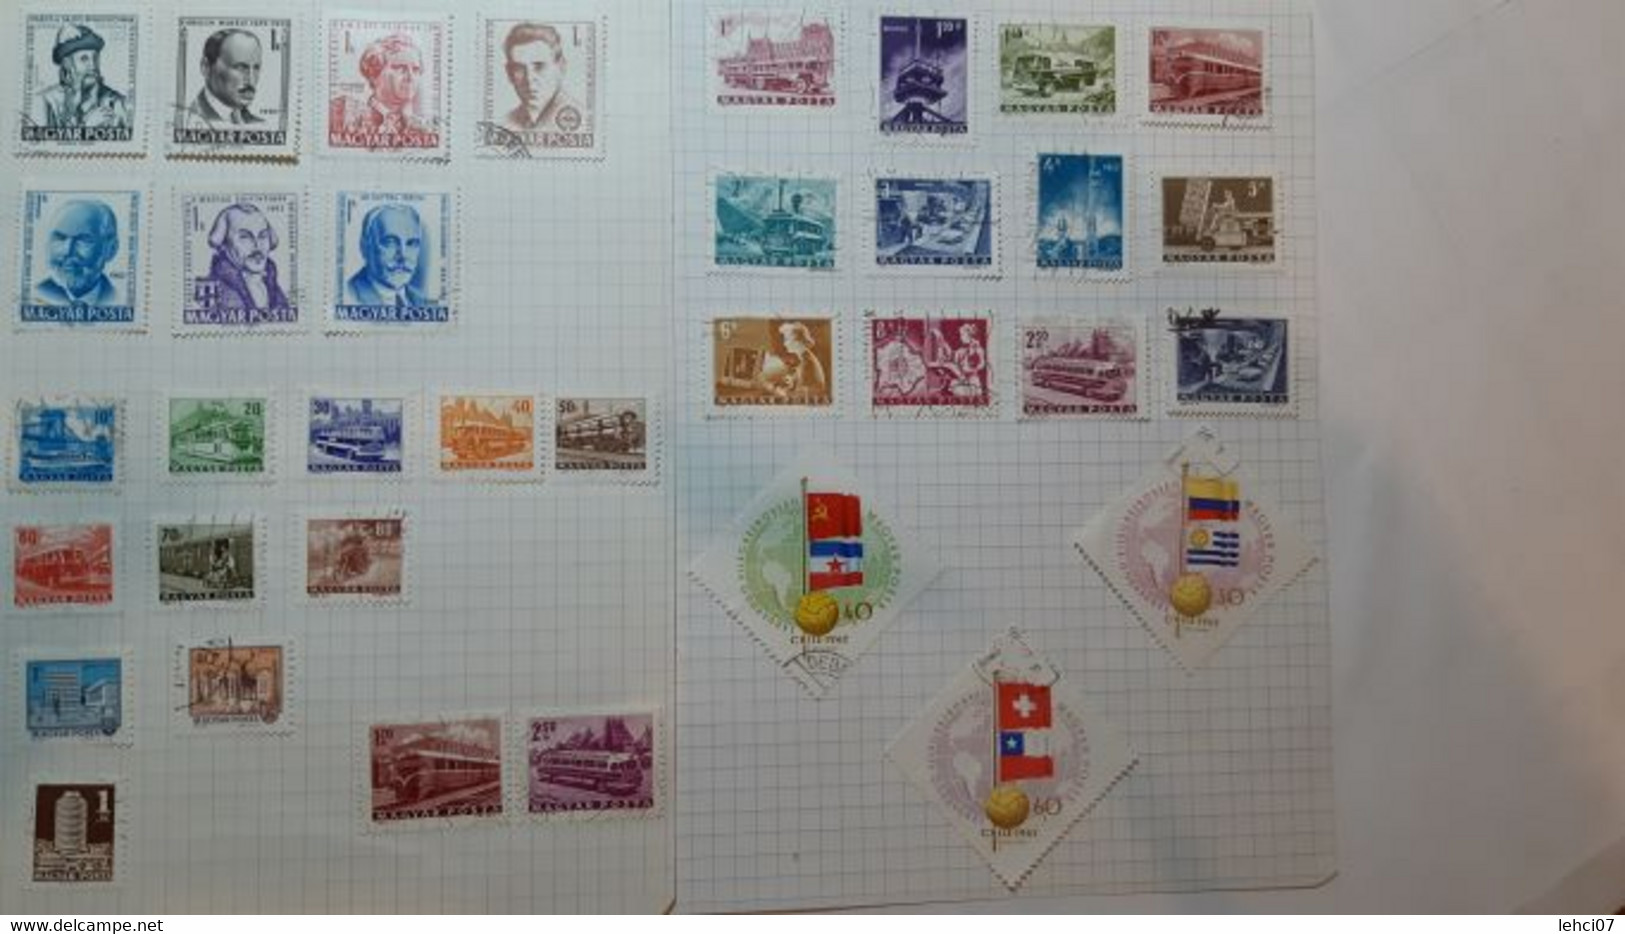 HONGRIE Magnifique collection importante, plus de 3 000 timbres